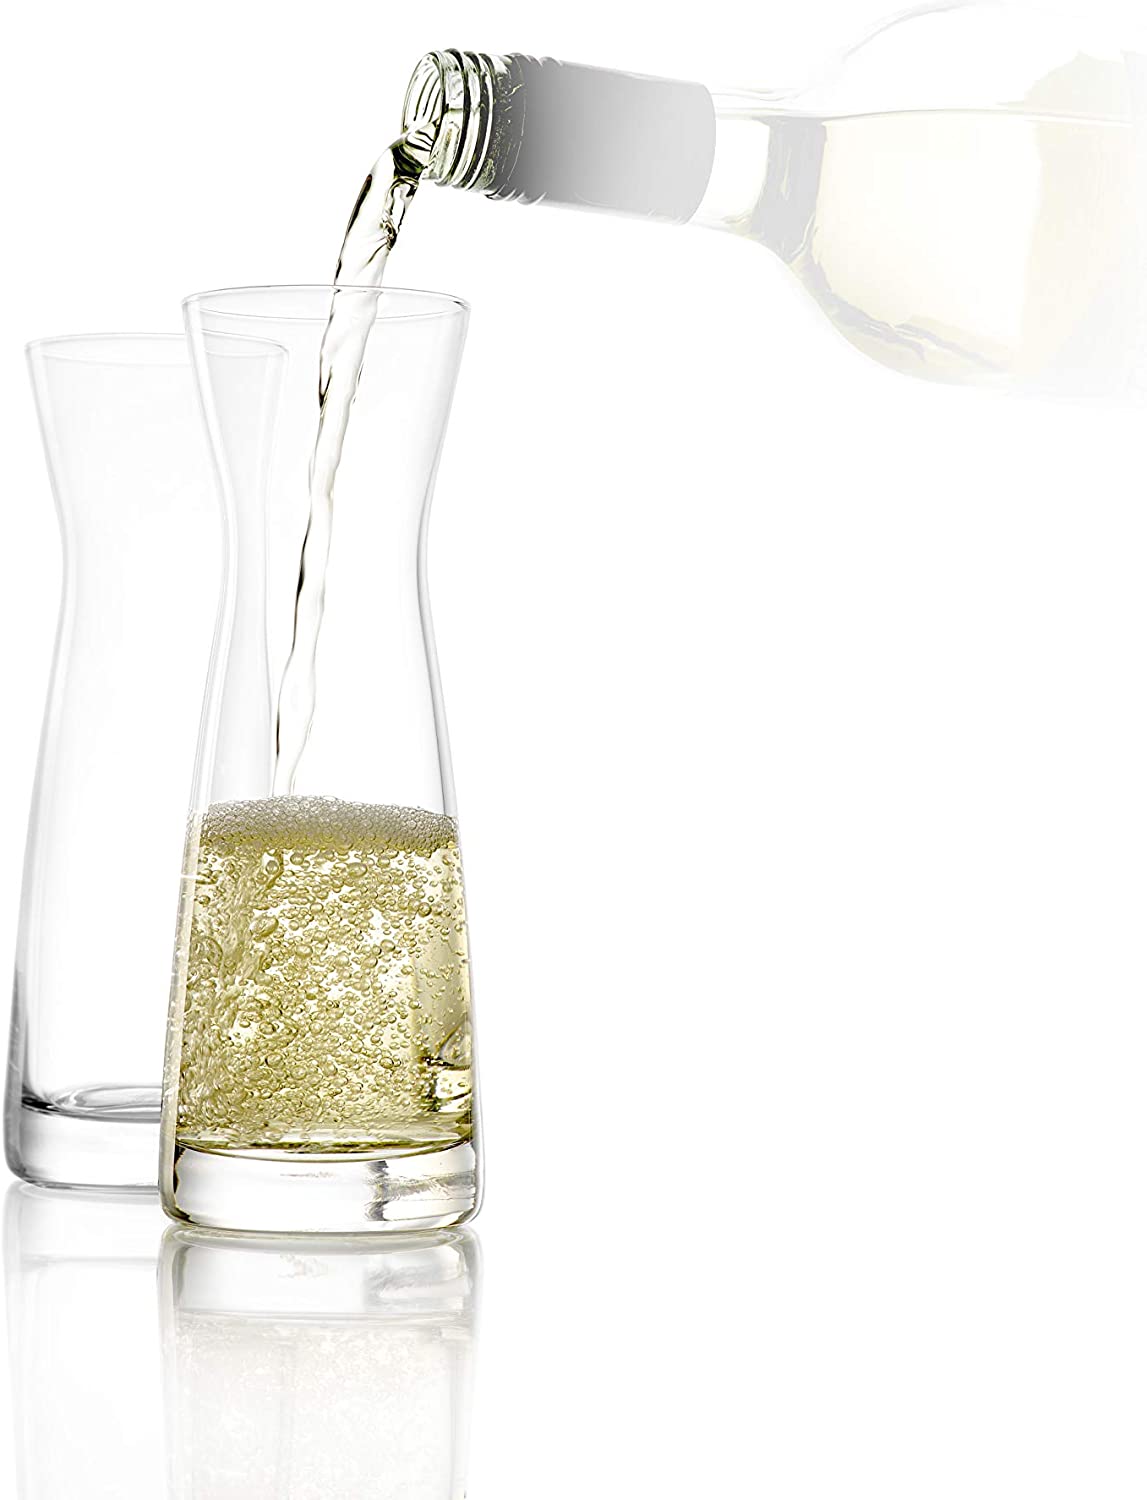 STÖLZLE LAUSITZ Carafes Set of 6 Series Universal Variant M 250 ml I Glass Spirit Carafe I Milk Carafe I Made of Fine Crystal Glass I Shatter-Resistant and Dishwasher Safe